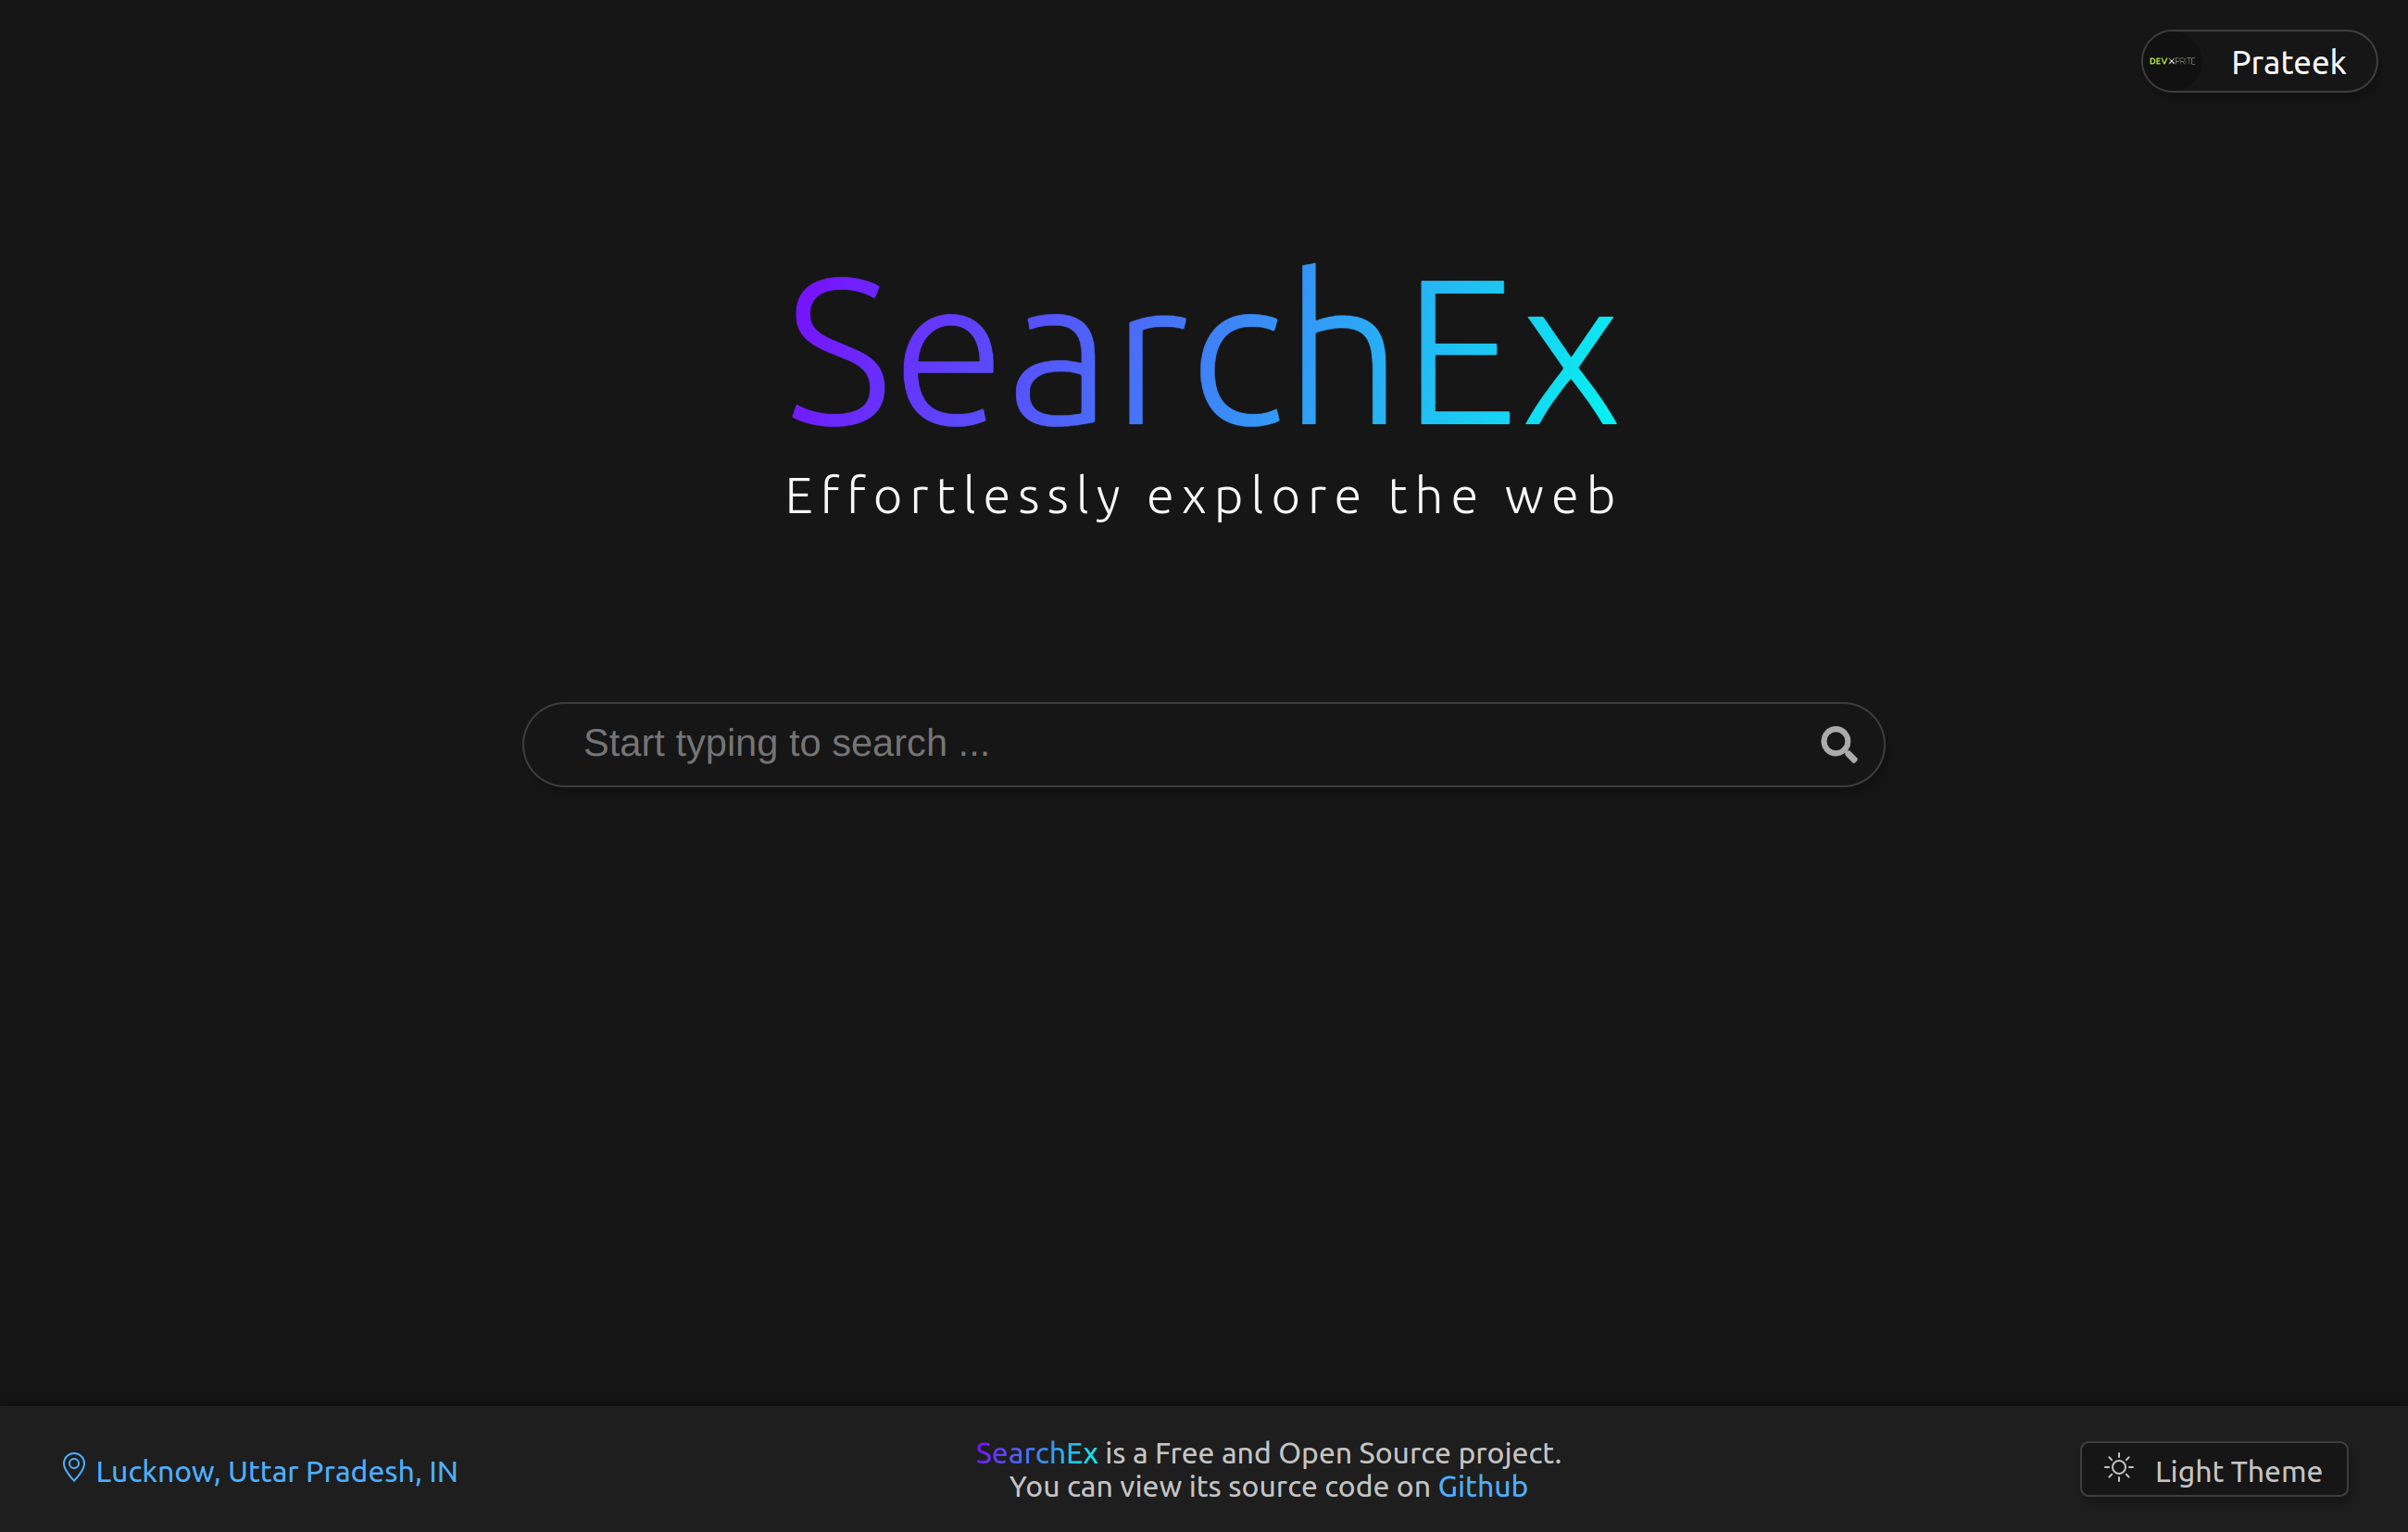 SearchEx